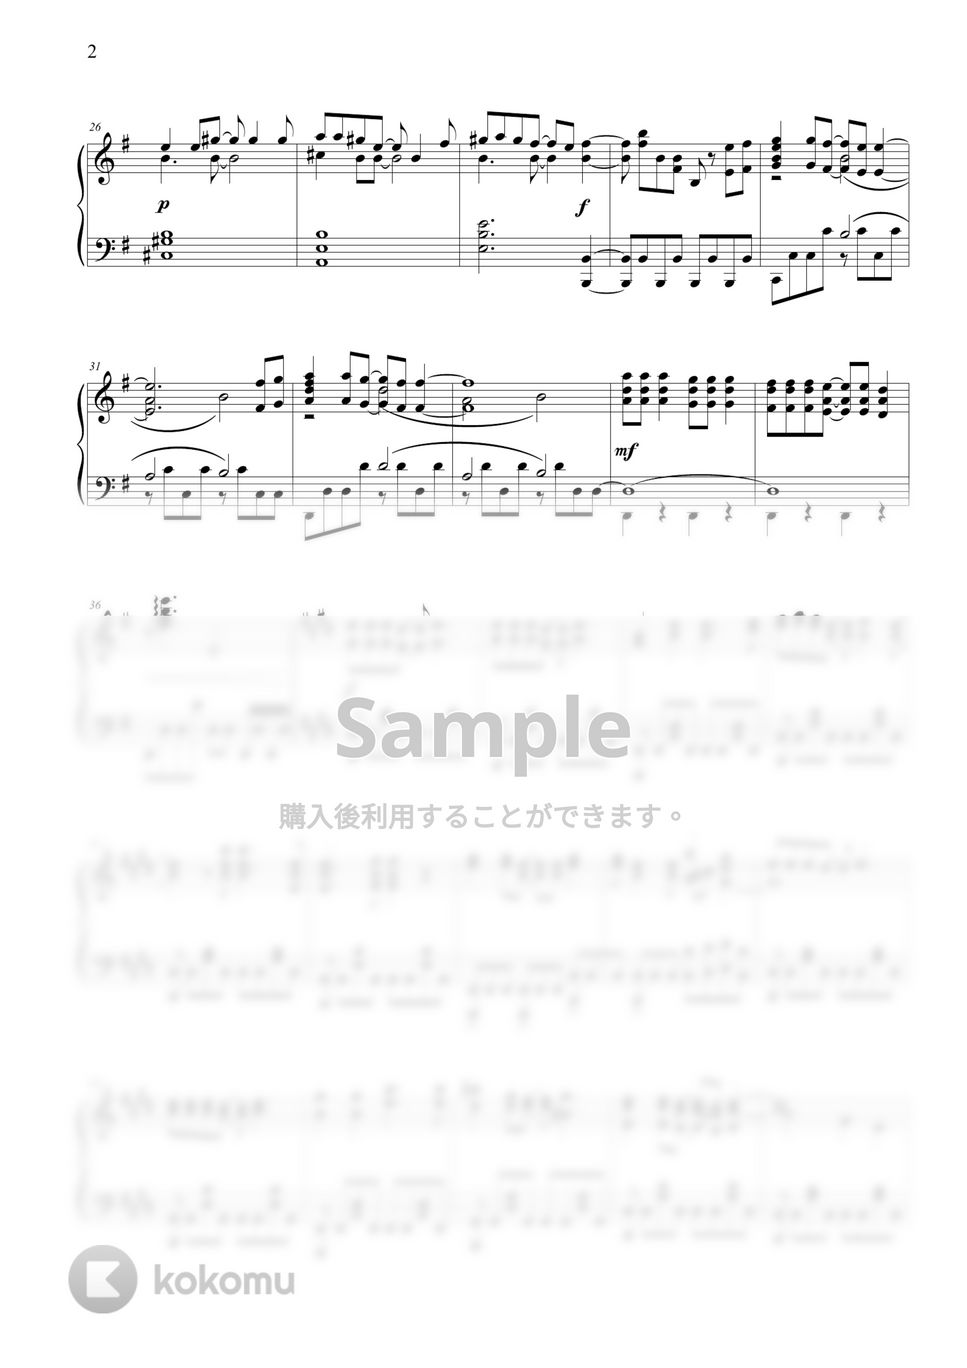 鬼滅の刃 刀鍛冶の里編 - コイコガレ by THIS IS PIANO